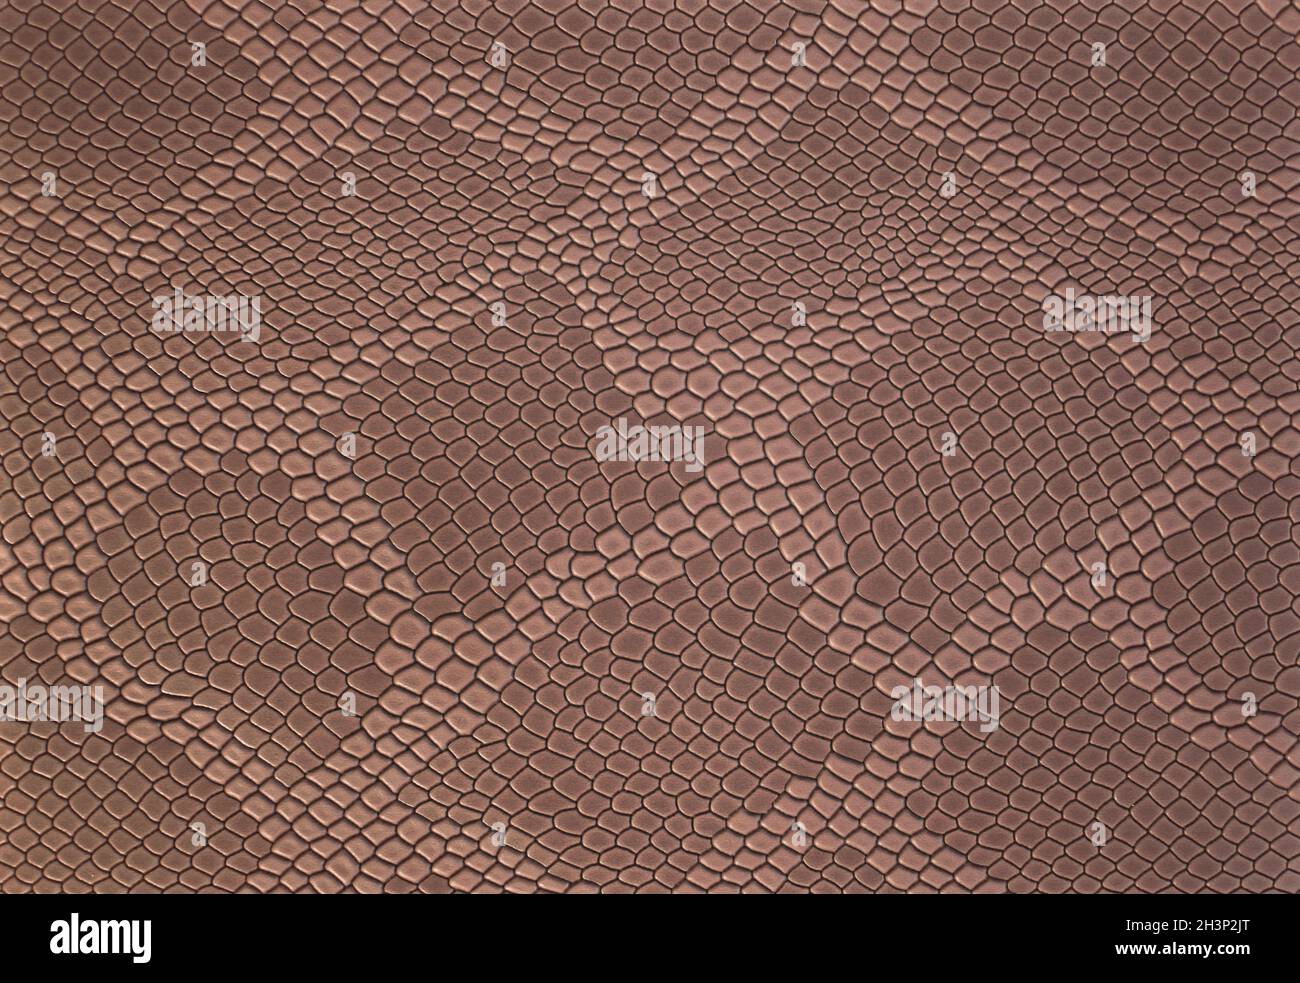 Hellbrauner Leder Textur Hintergrund mit Muster, Nahaufnahme. Reptilienhaut. Beigefarbene Haut eines Krokodils oder einer Schlange mit Vignette. Stockfoto